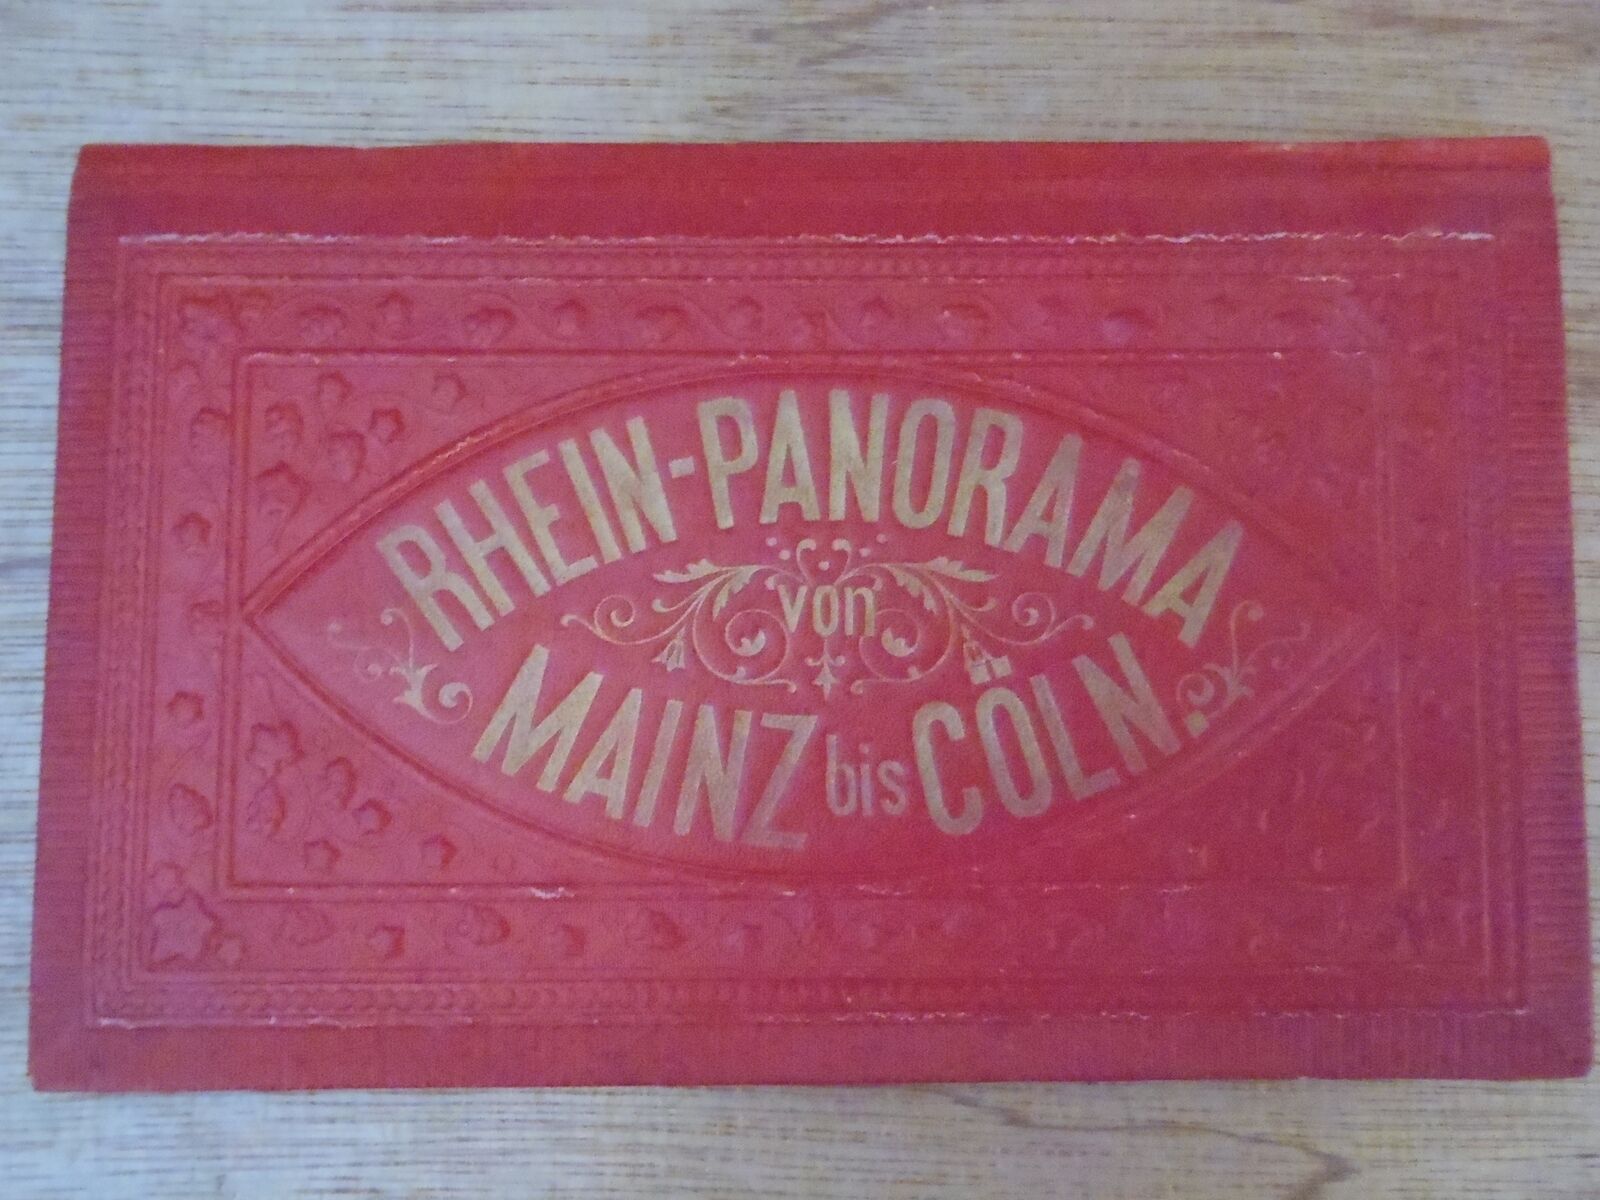 RHEIN-PANORAMA von Mains bis Coln - 1890s 2 meter Rhine Valley Foldout Duocolor